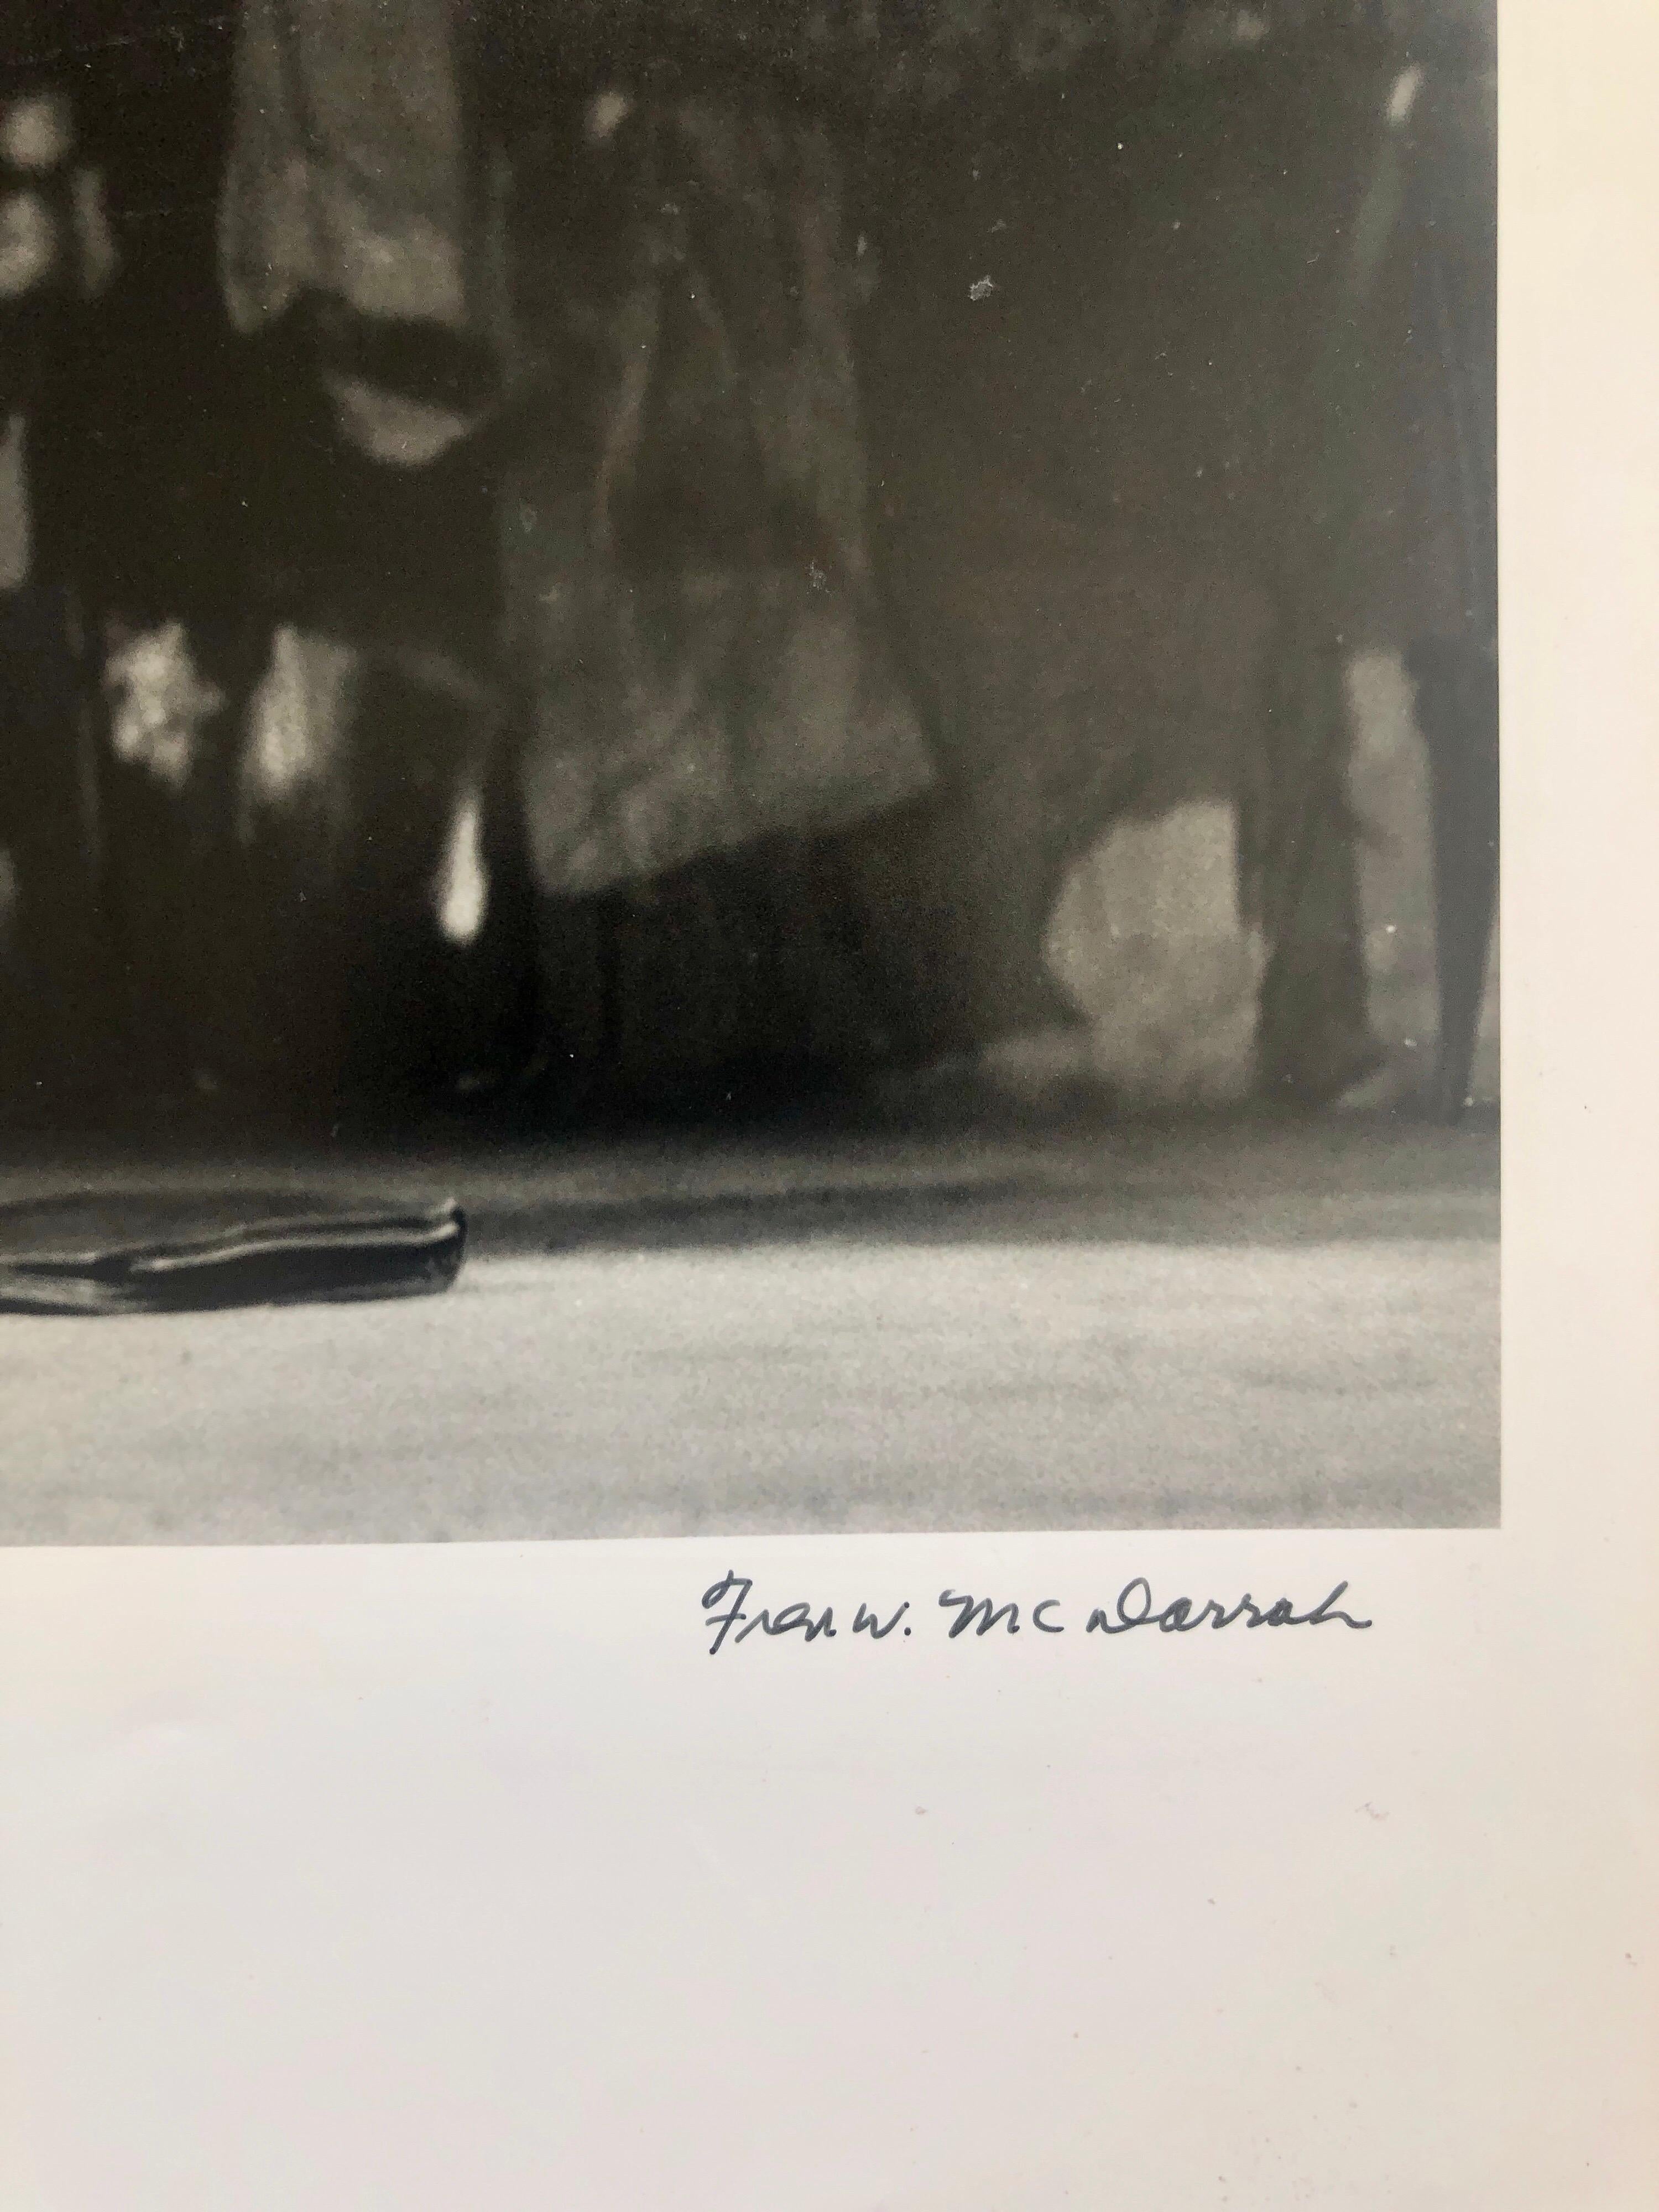 Allen Ginsberg lisant Howl et d'autres poèmes au Living Theater en 1959.
signé à l'encre, avec le cachet du photographe au verso et le titre écrit à la main.
IRWIN Allen Ginsberg 1926 - 1997 était un poète, philosophe et écrivain américain. Il est